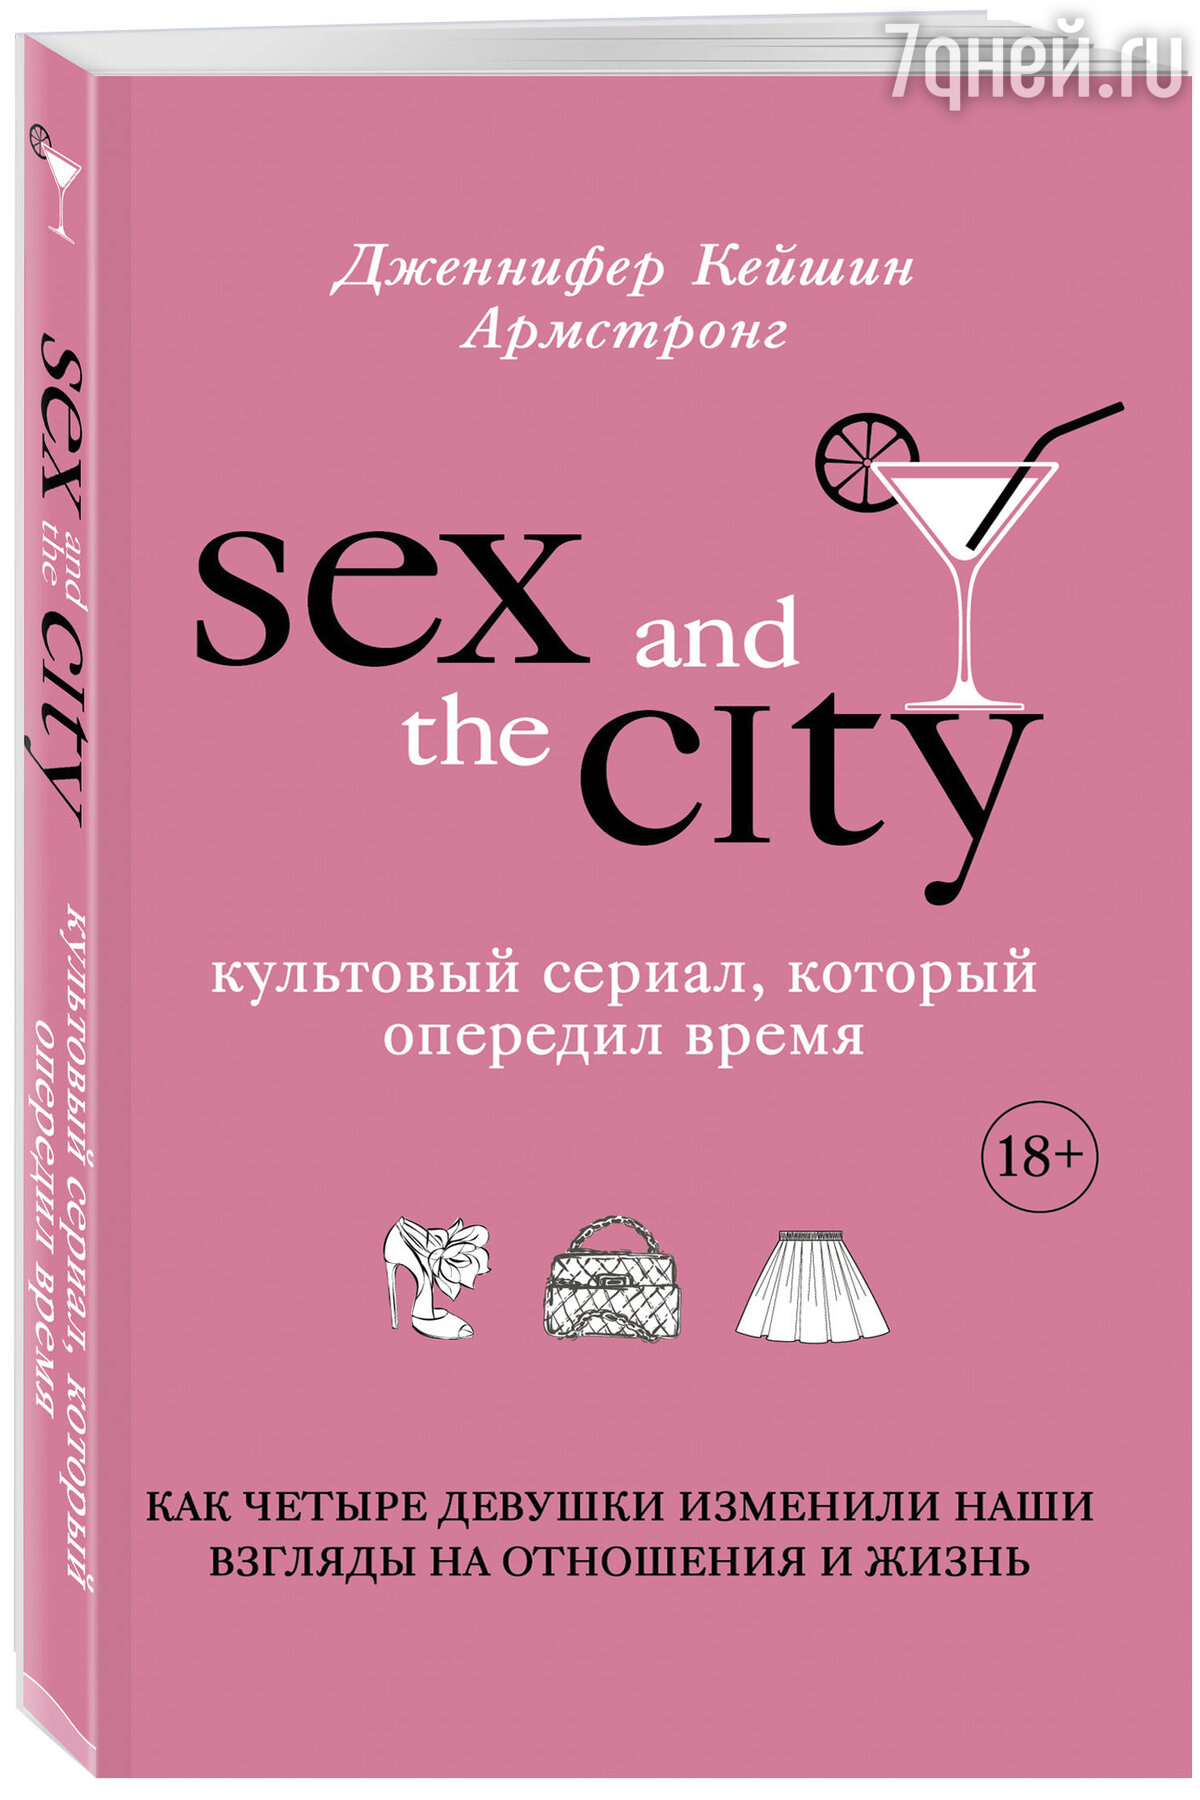 Секс в большом городе – читать онлайн бесплатно